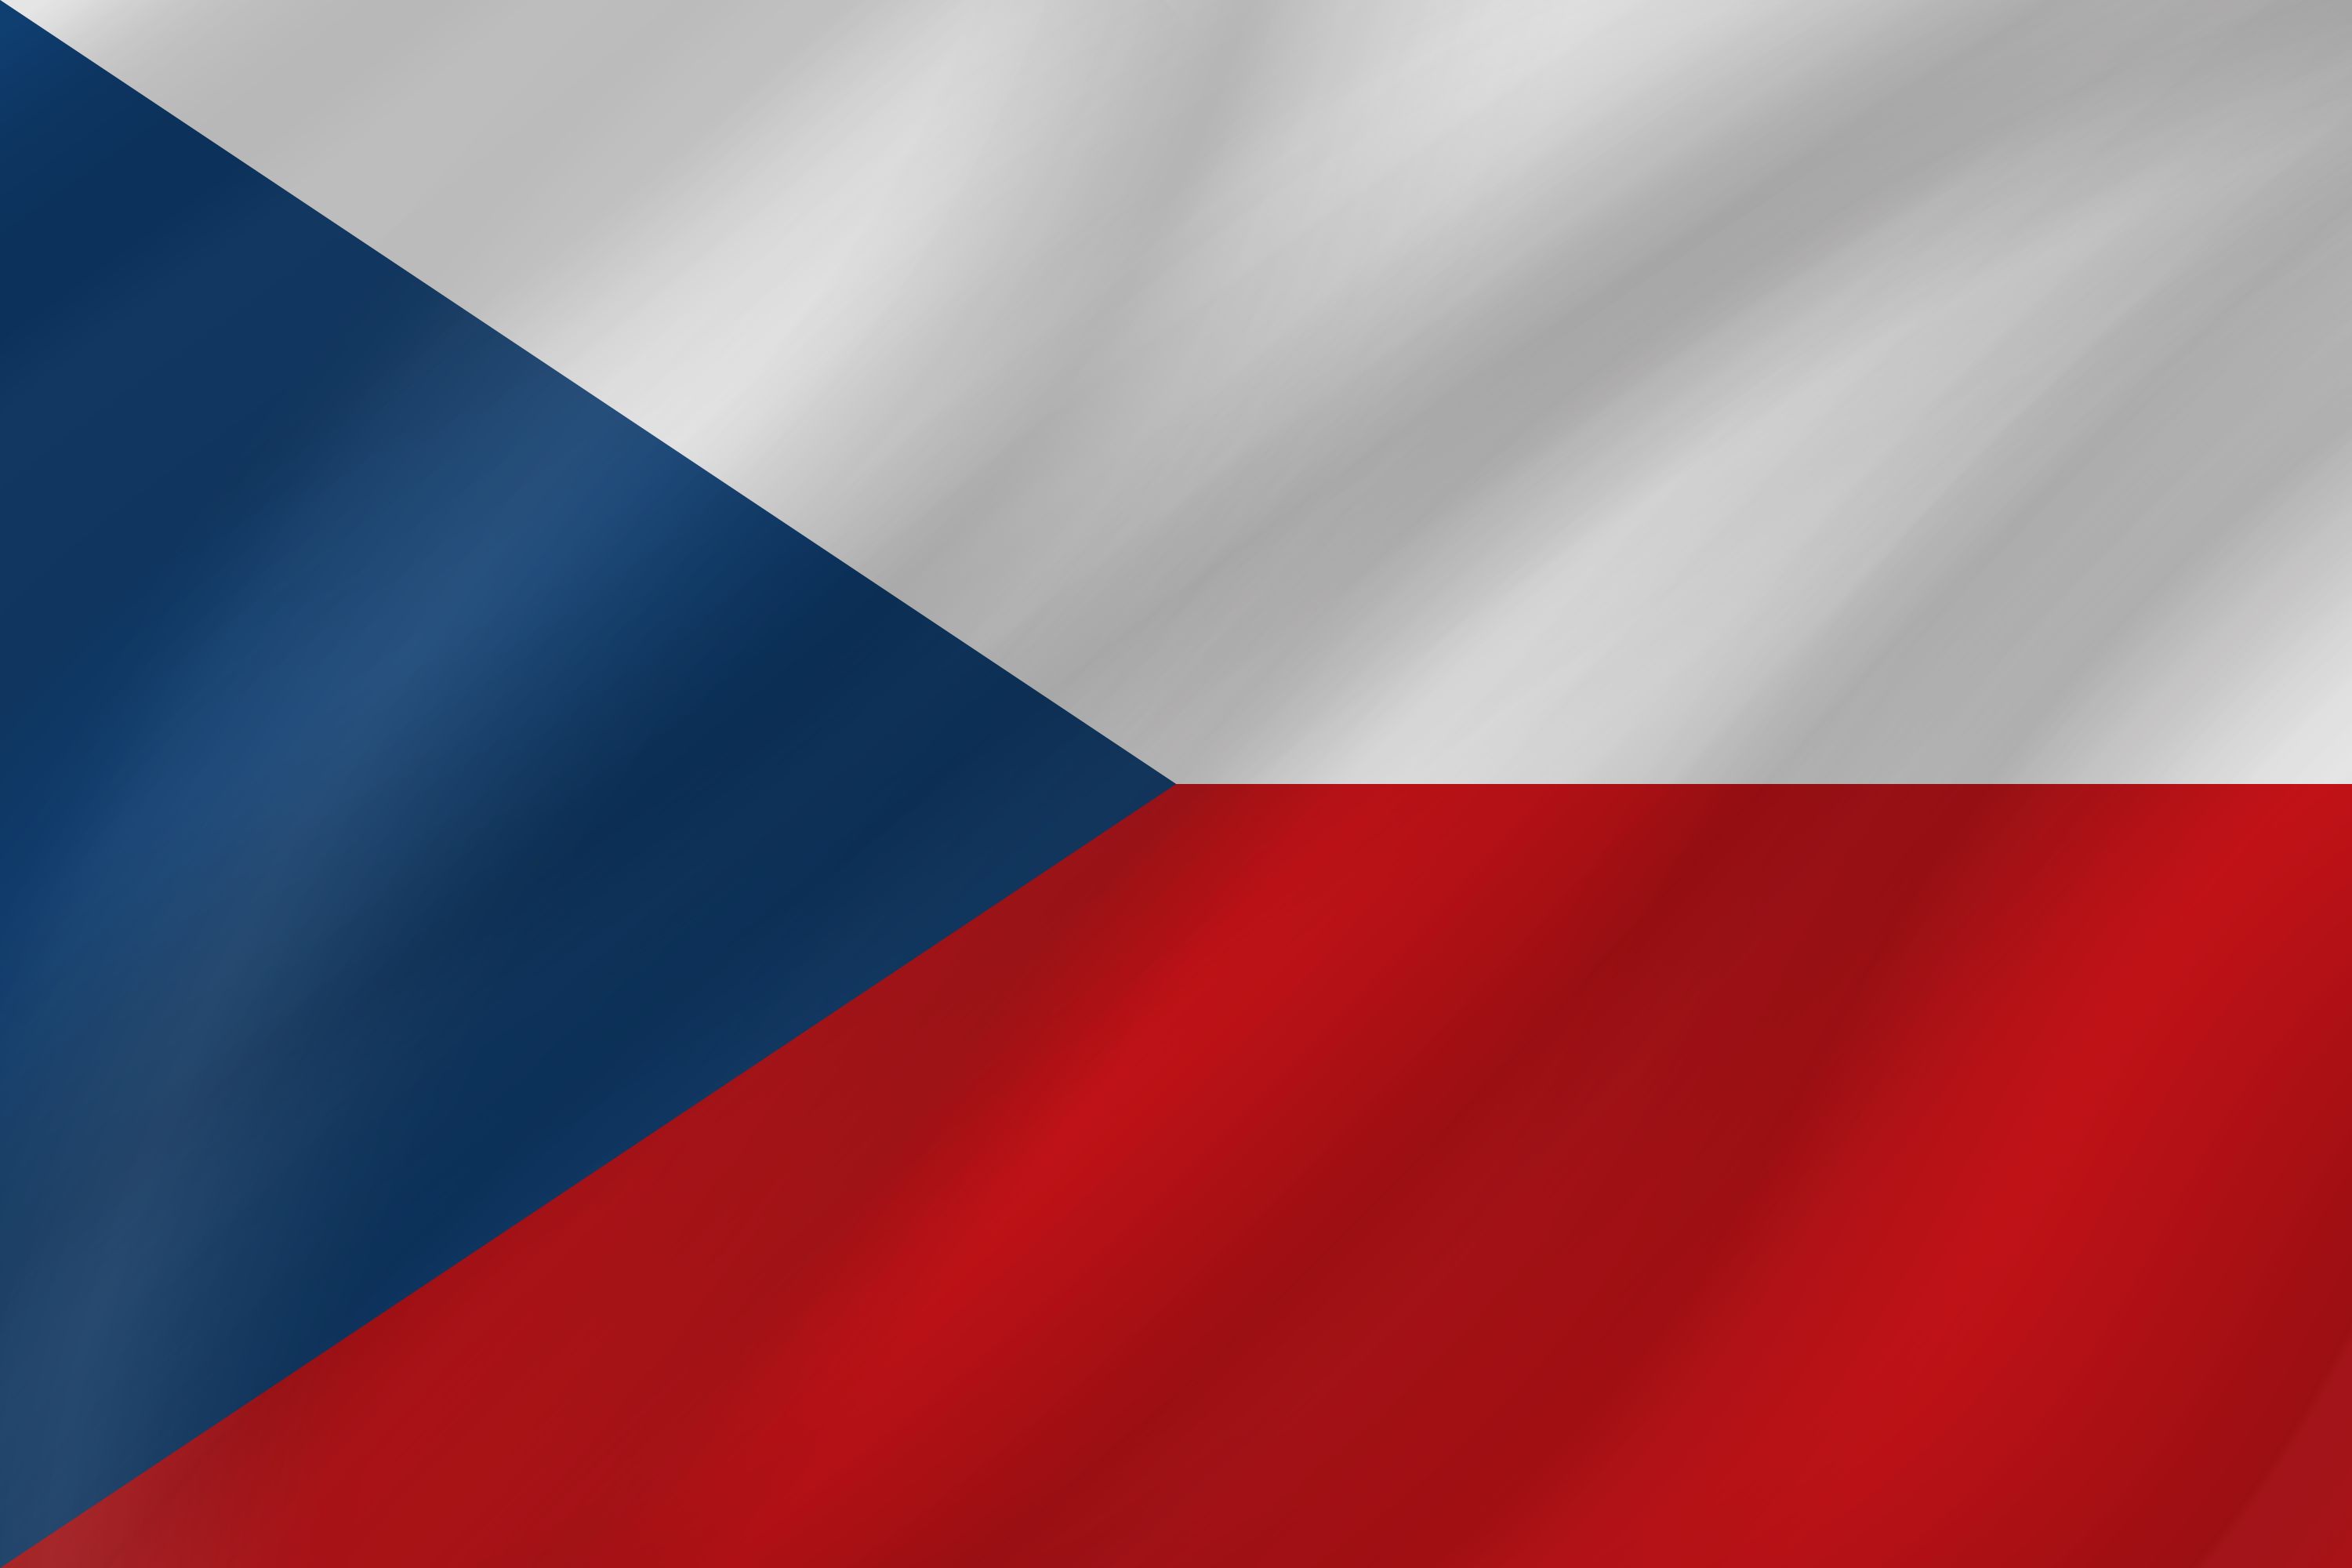 Скачать обои бесплатно Флаги, Разное, Флаг, Флаг Чешской Республики картинка на рабочий стол ПК